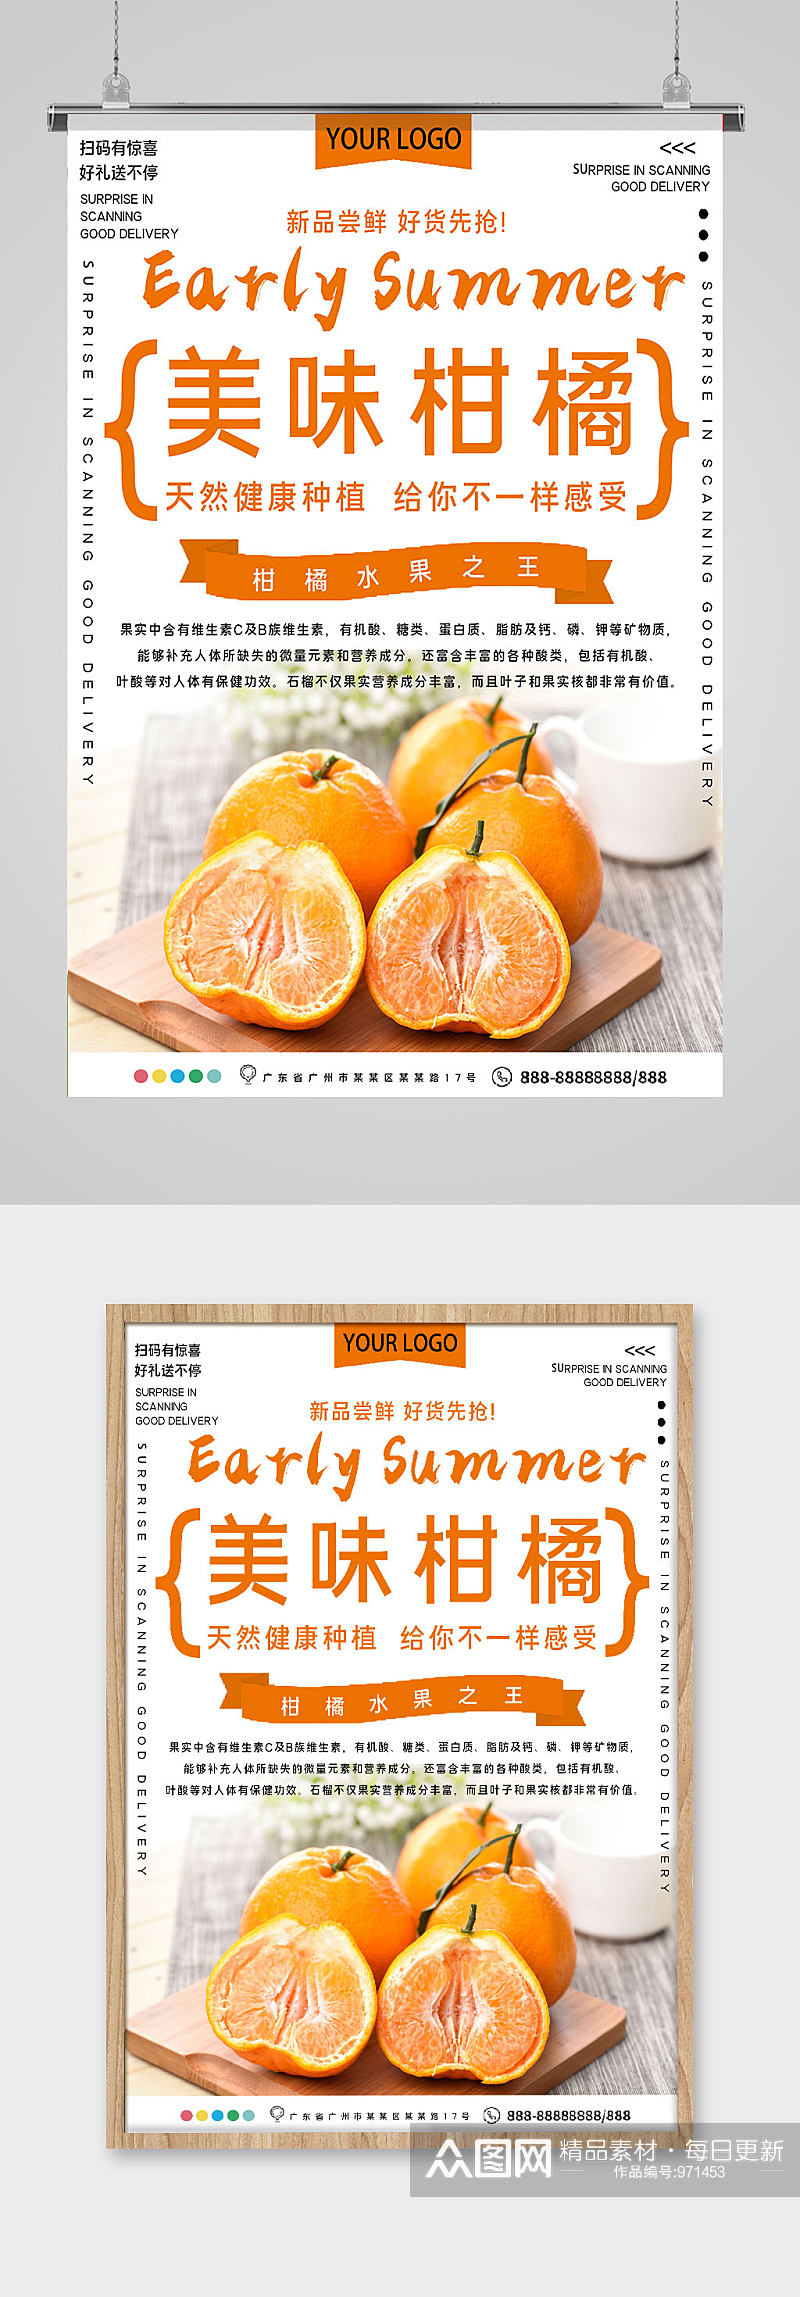 美味柑橘水果店海报素材